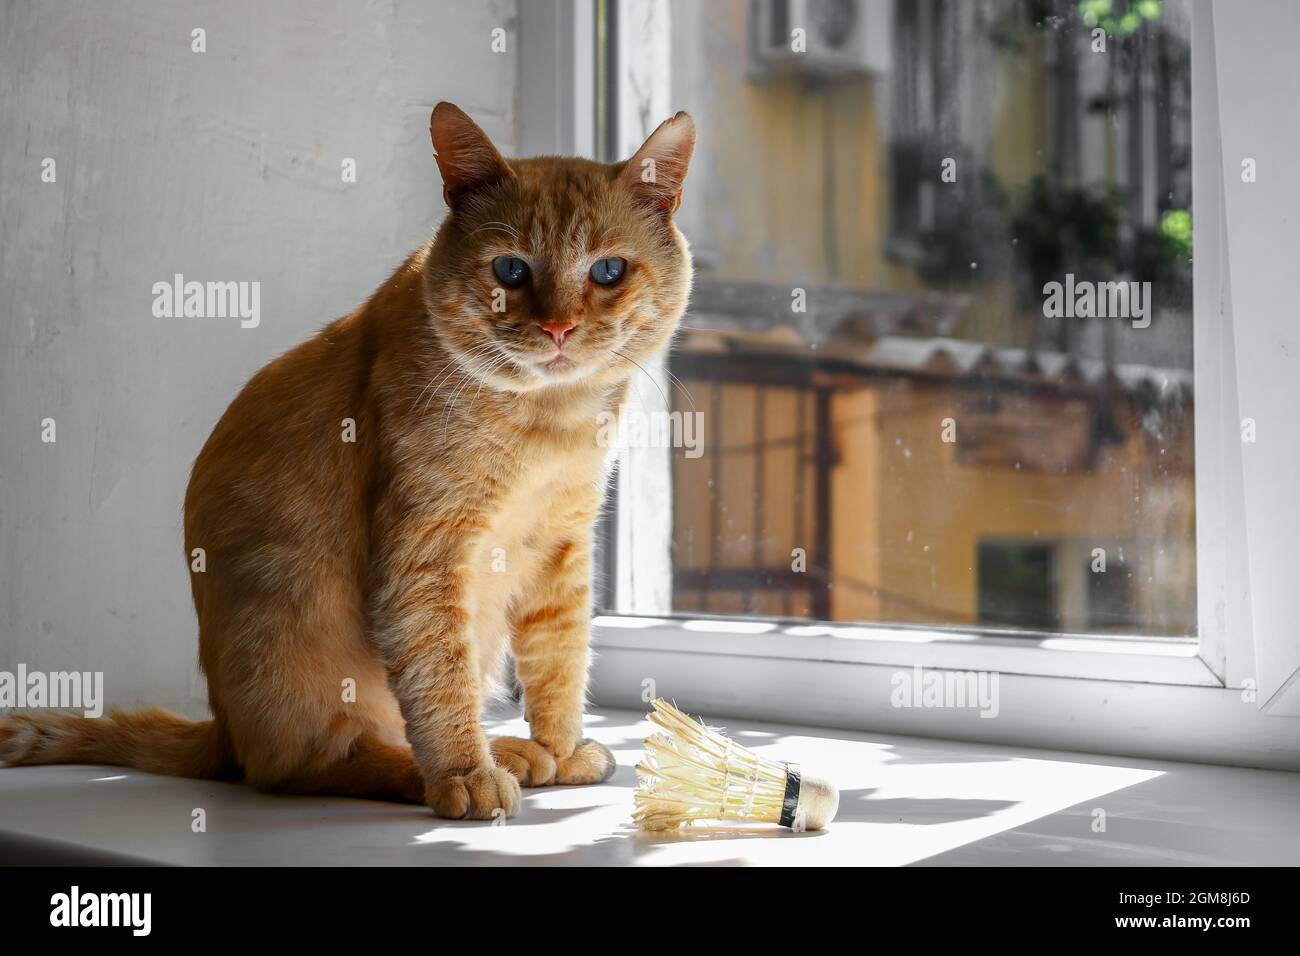 Portrait d'un chat domestique au gingembre sur le rebord de la fenêtre. Un chat mignon est assis sur une fenêtre le jour ensoleillé de l'automne. Banque D'Images